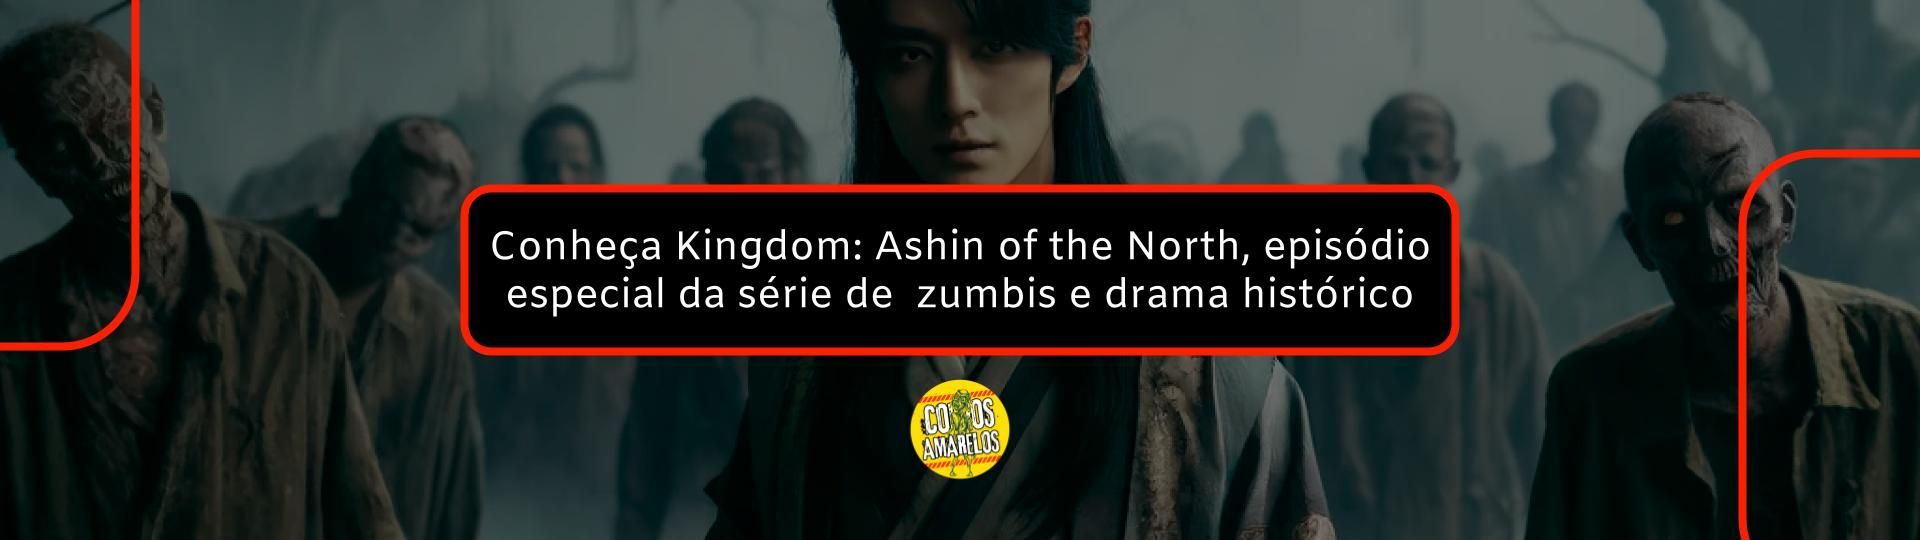 conheca-kingdom-ashin-of-the-north-o-episodio-especial-da-serie-de-zumbis-e-drama-historico